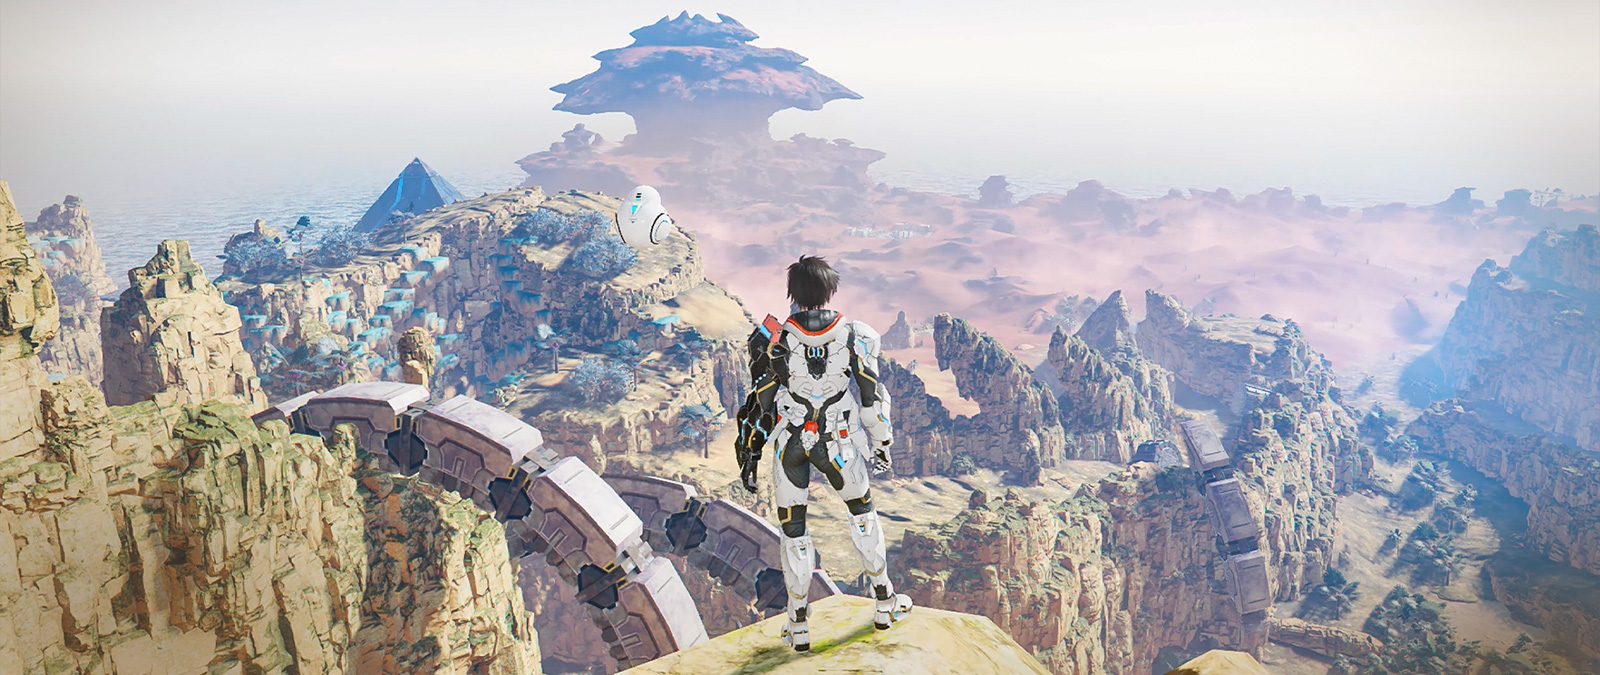 一個穿著動力盔甲的角色站在懸崖上俯瞰山谷。